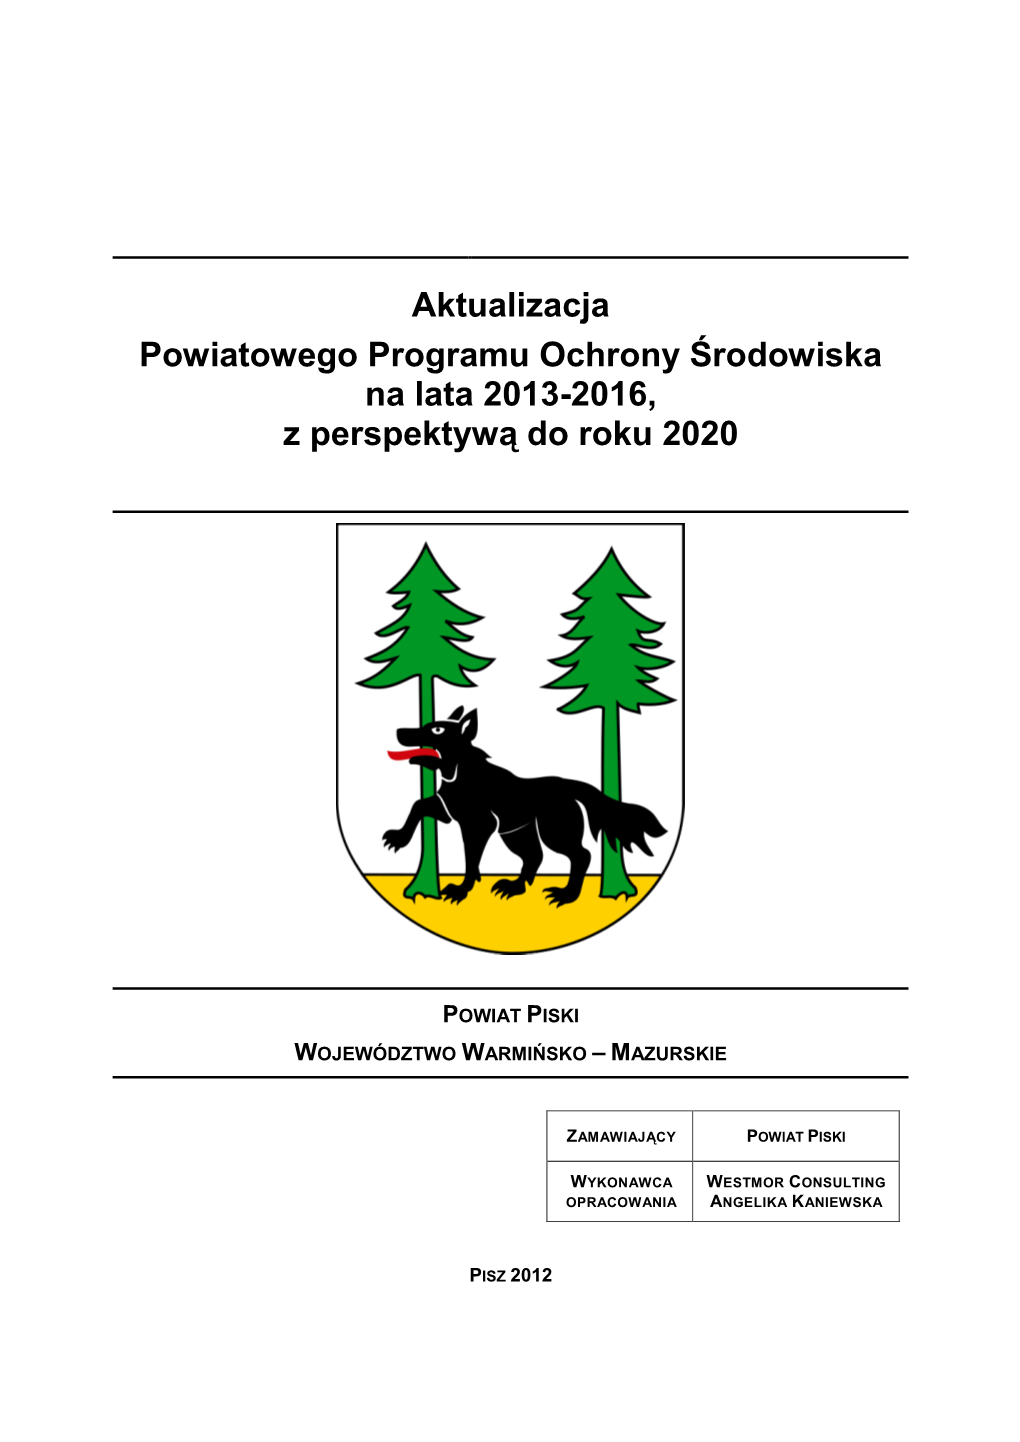 Aktualizacja Powiatowego Programu Ochrony Środowiska Na Lata 2013-2016, Z Perspektywą Do Roku 2020